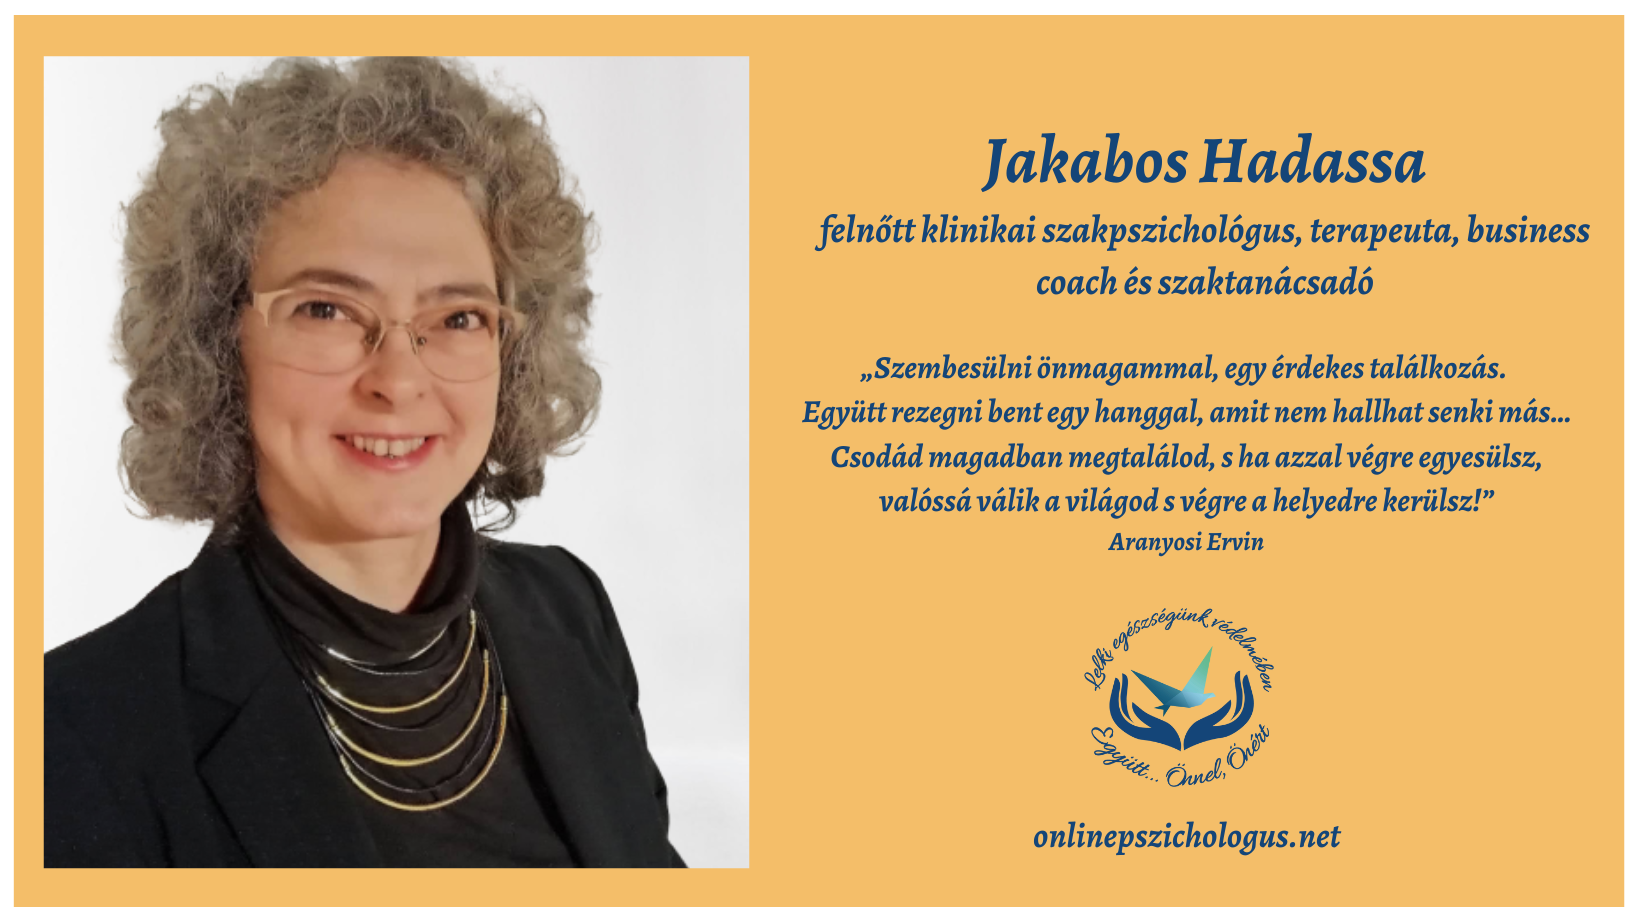 Interjú Jakabos Hadassa  felnőtt klinikai szakpszichológus, terapeuta, business coach és szaktanácsadóval